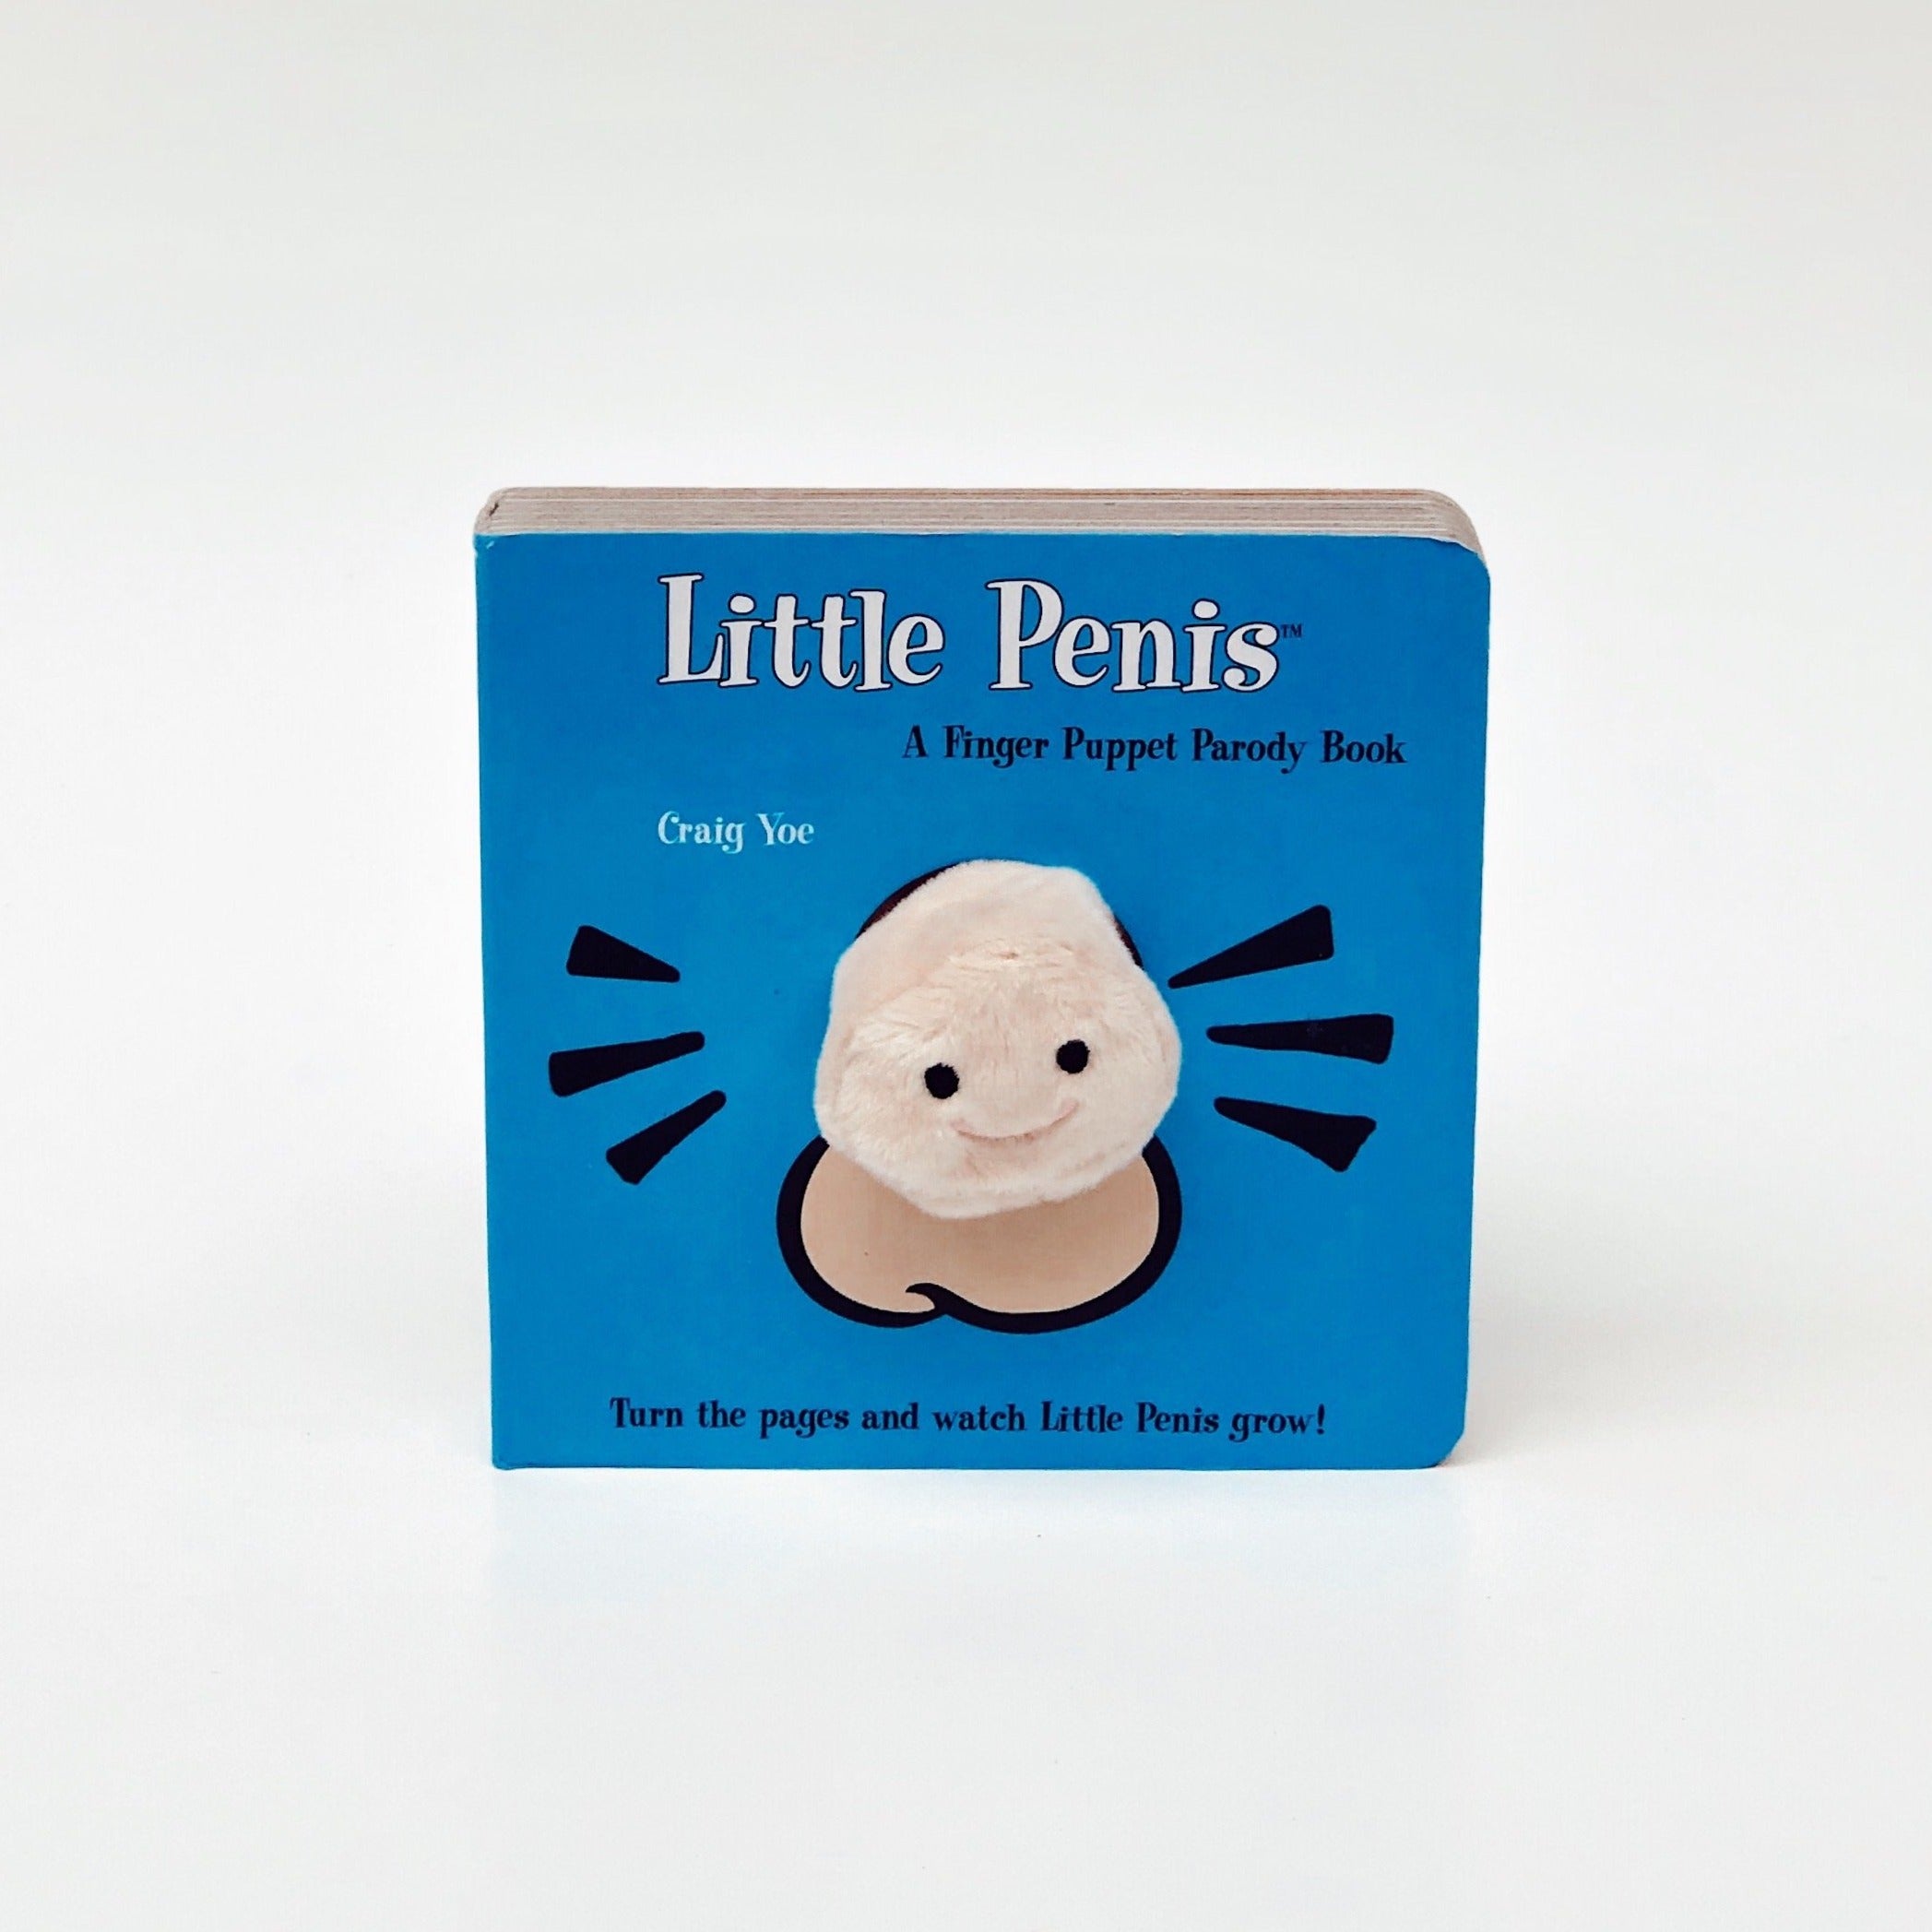 Little Penis Finger Puppet Book